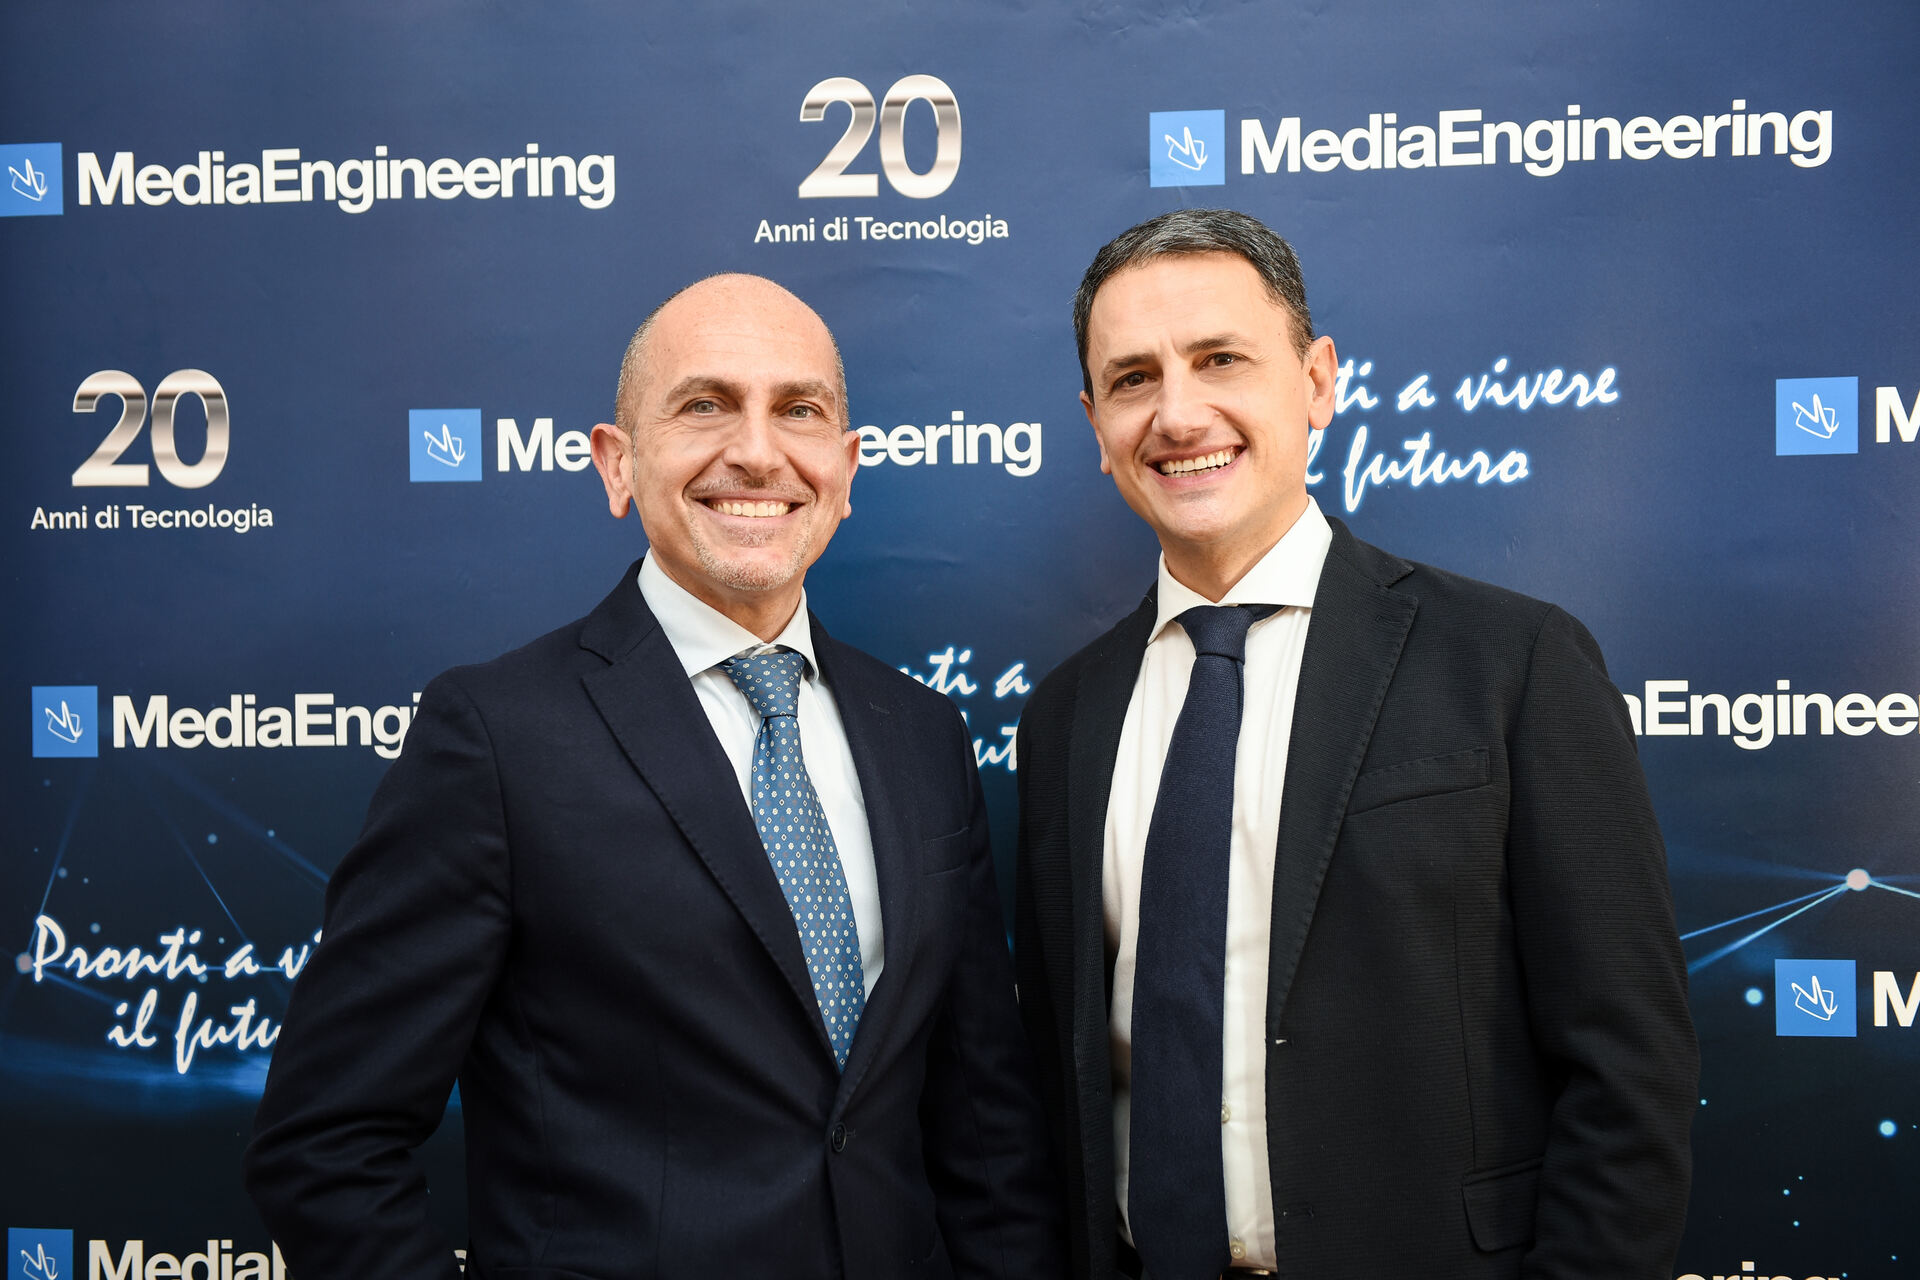 Olotrasporto: la società Media Engineering fu fondata a Roma nel 2002 dall’intuizione degli ingegneri Antonio e Gianluca Franzese